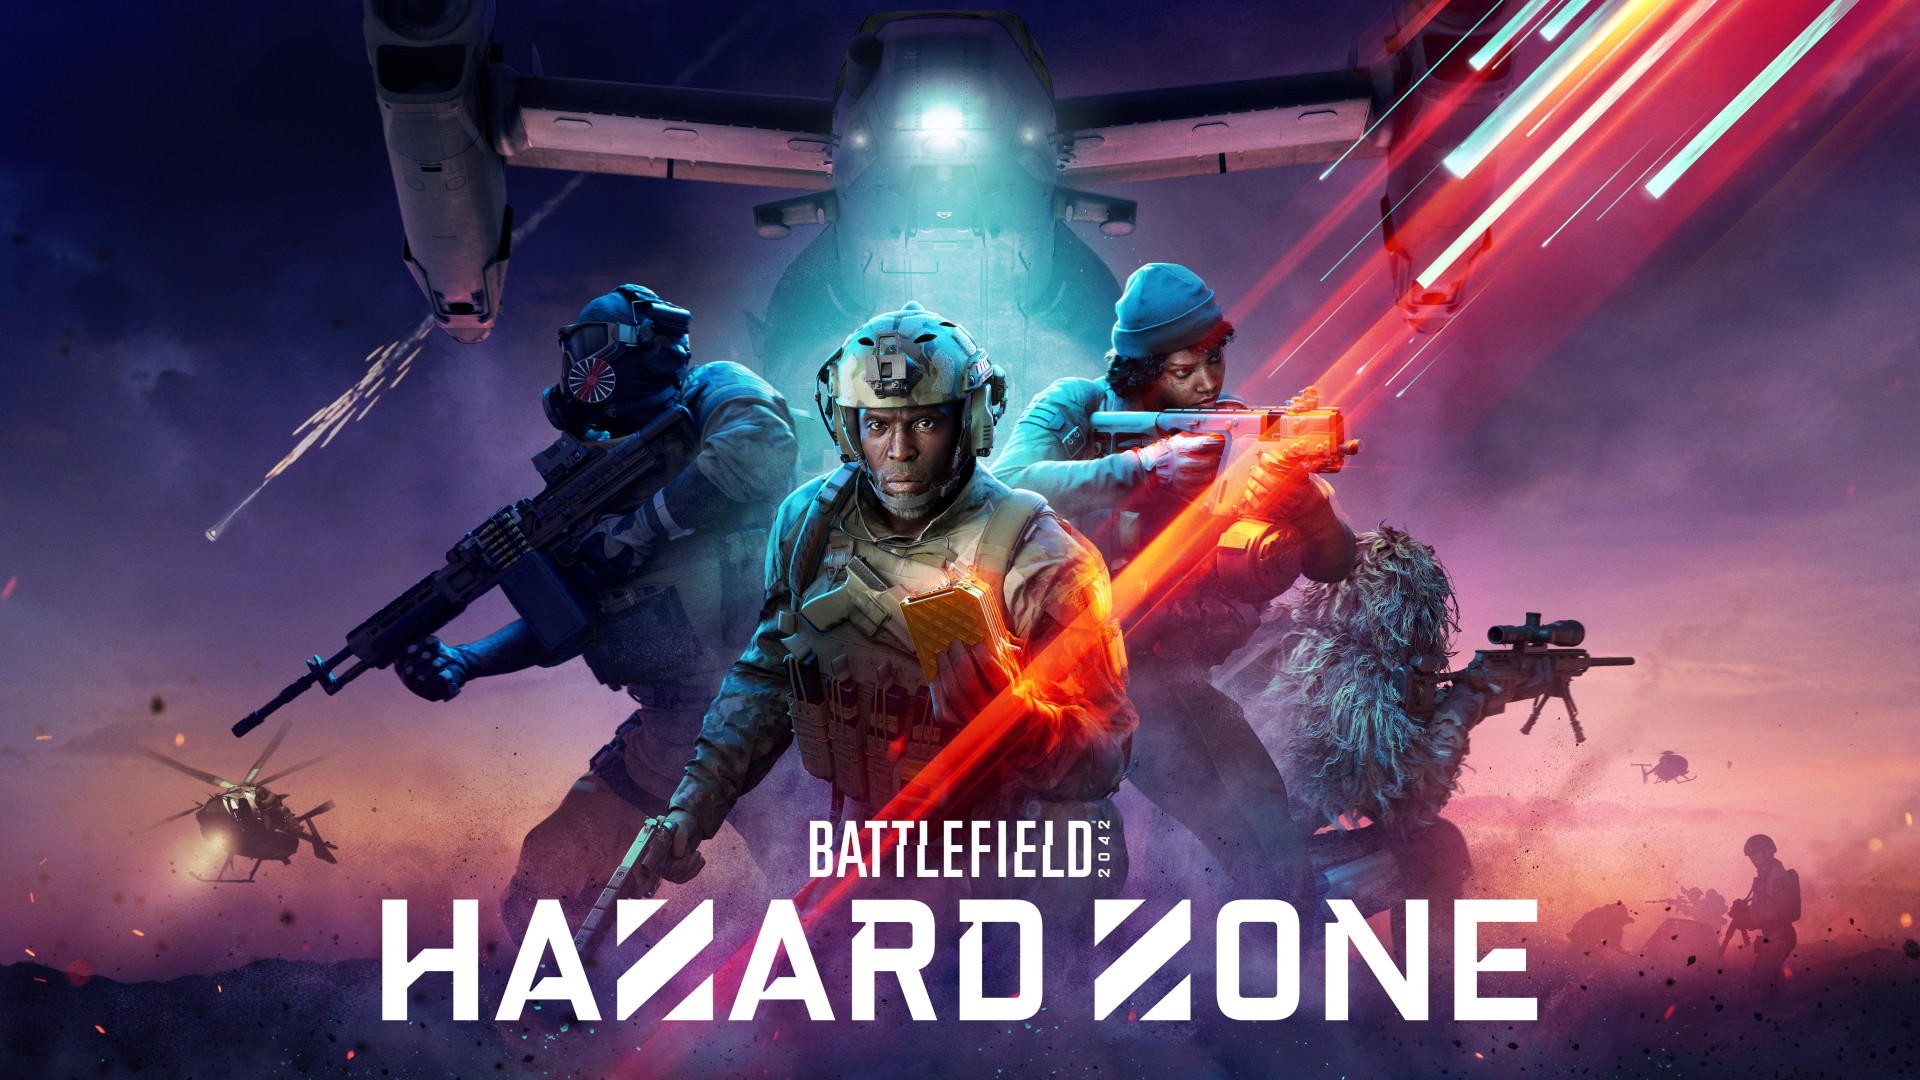 Battlefield 2042 Gameplay - Hazard Zone, Portal, Conquest. 